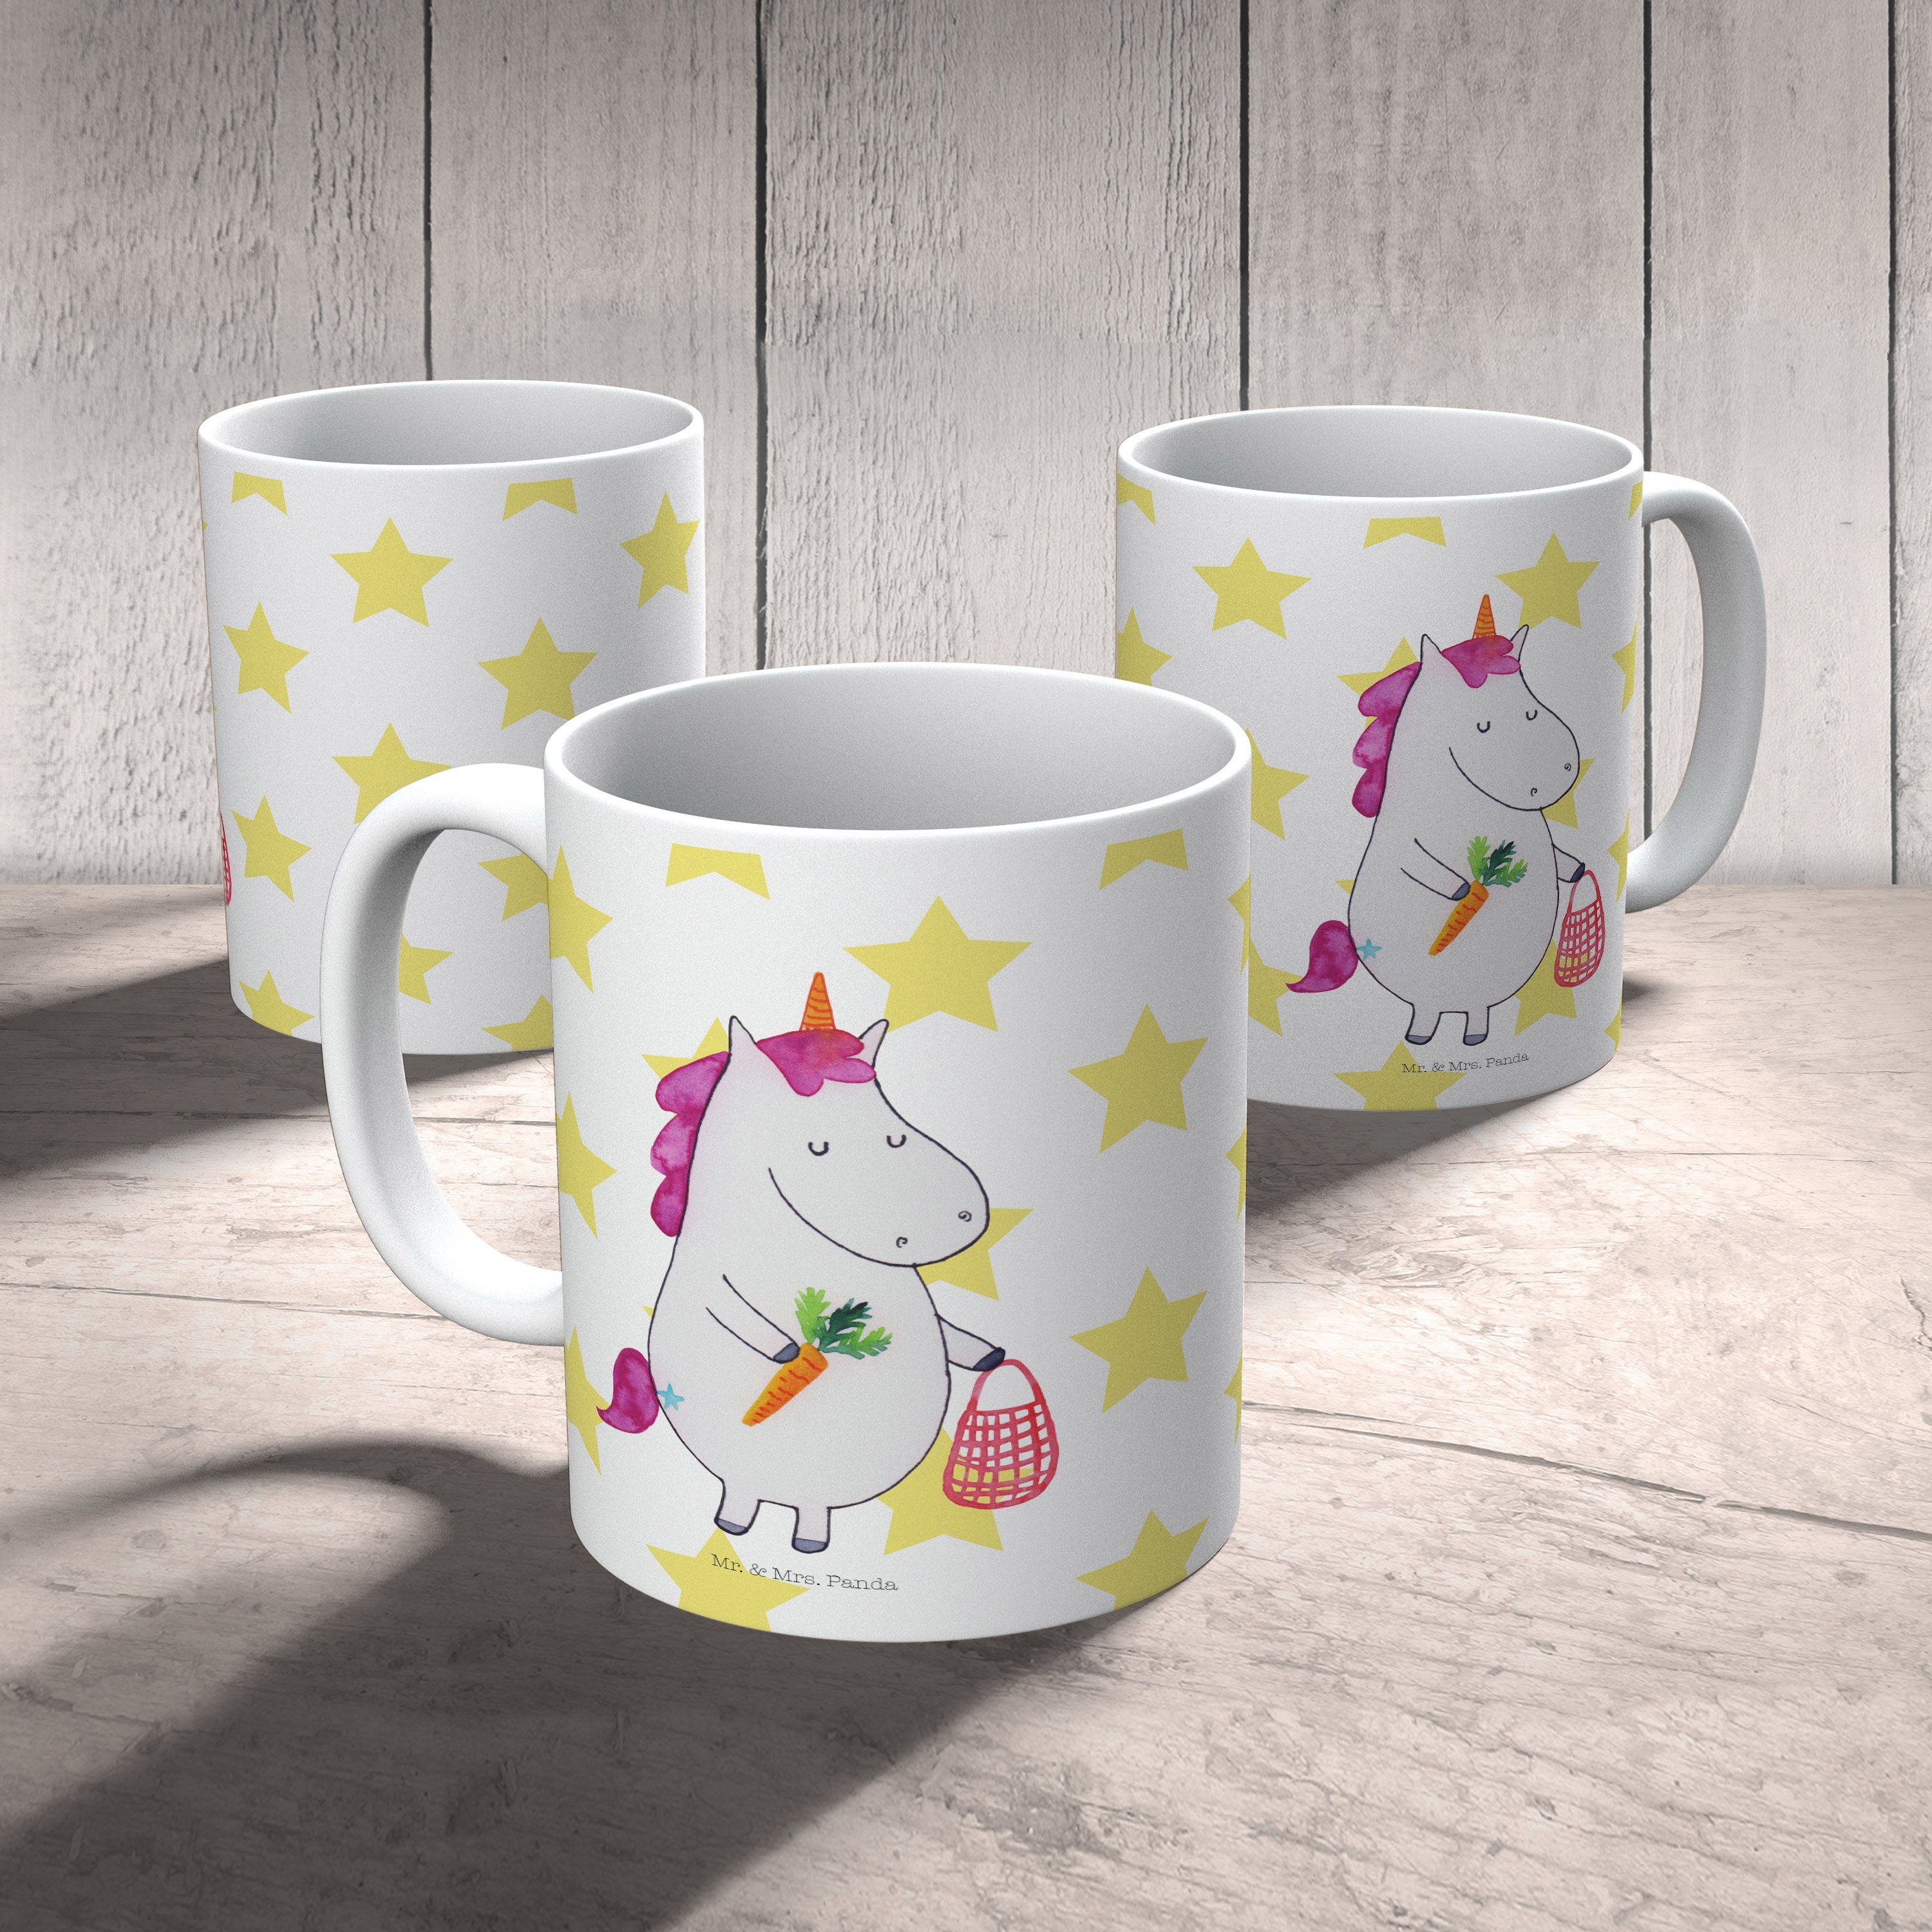 & Keramik - Tasse, Weiß Kaffeebech, Gemüse Geschenk - Unicorn, Mr. Tasse Geschenk, Panda Einhorn Mrs.